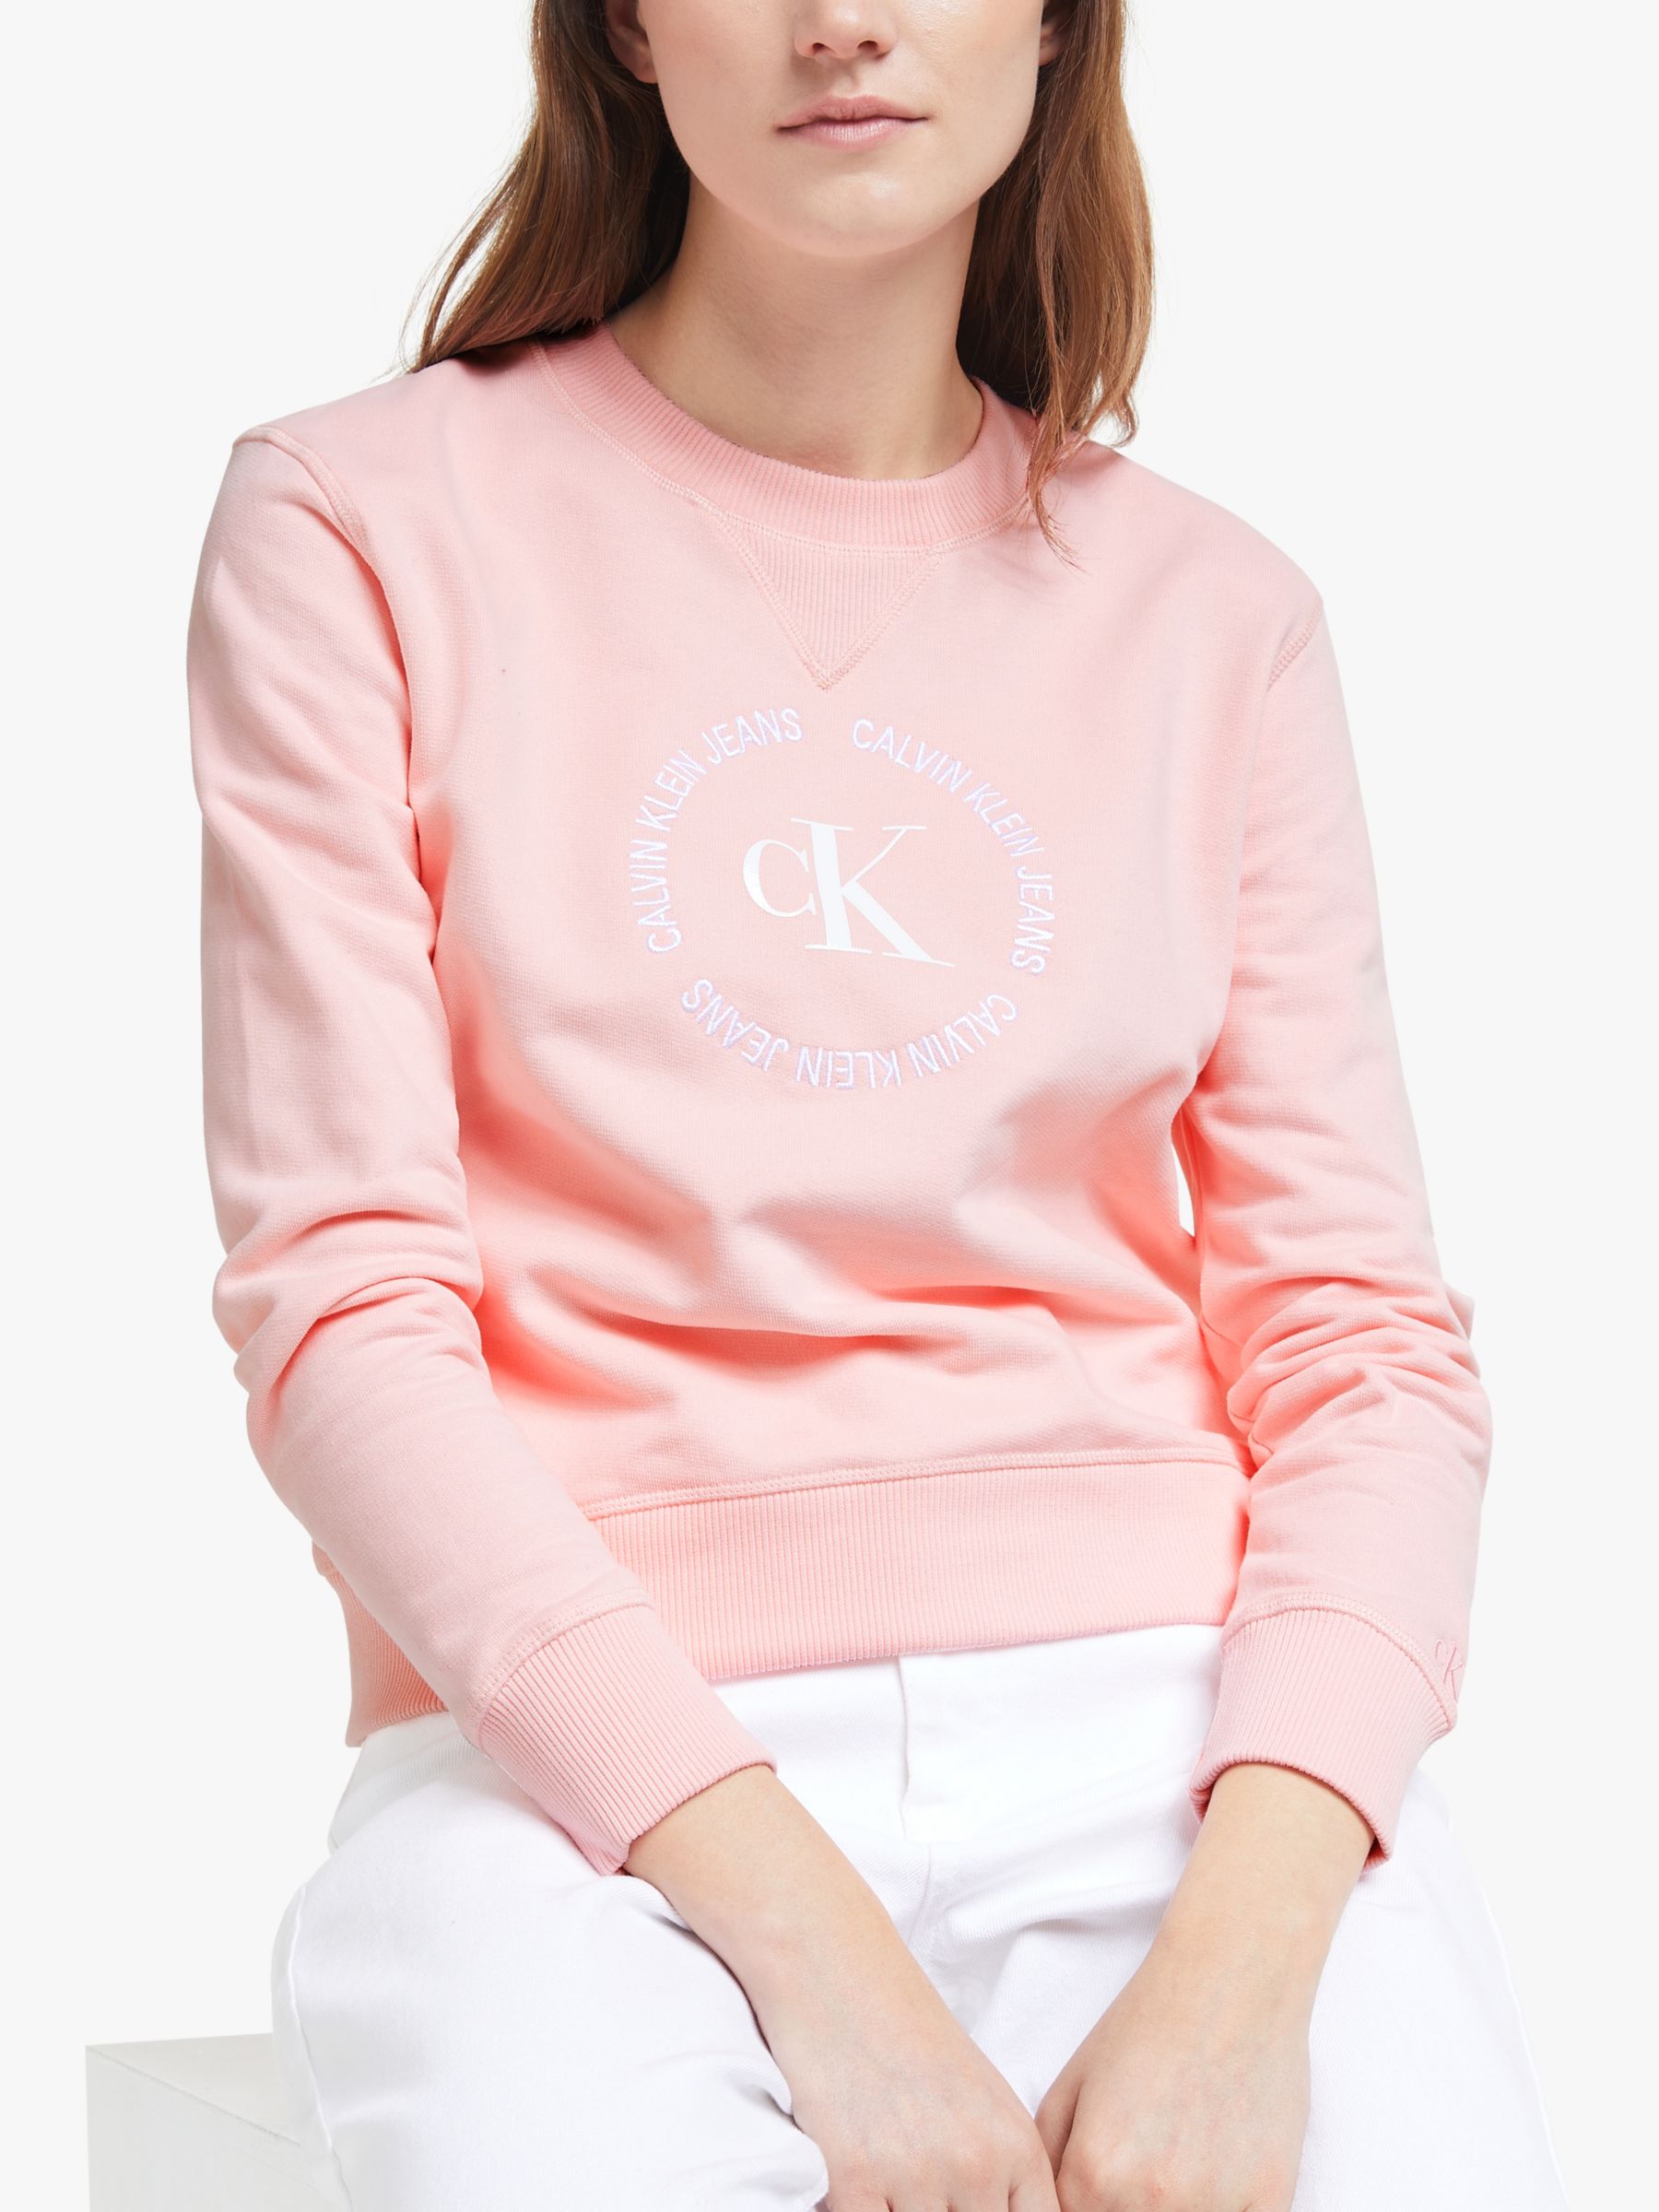 pink calvin klein hoodie